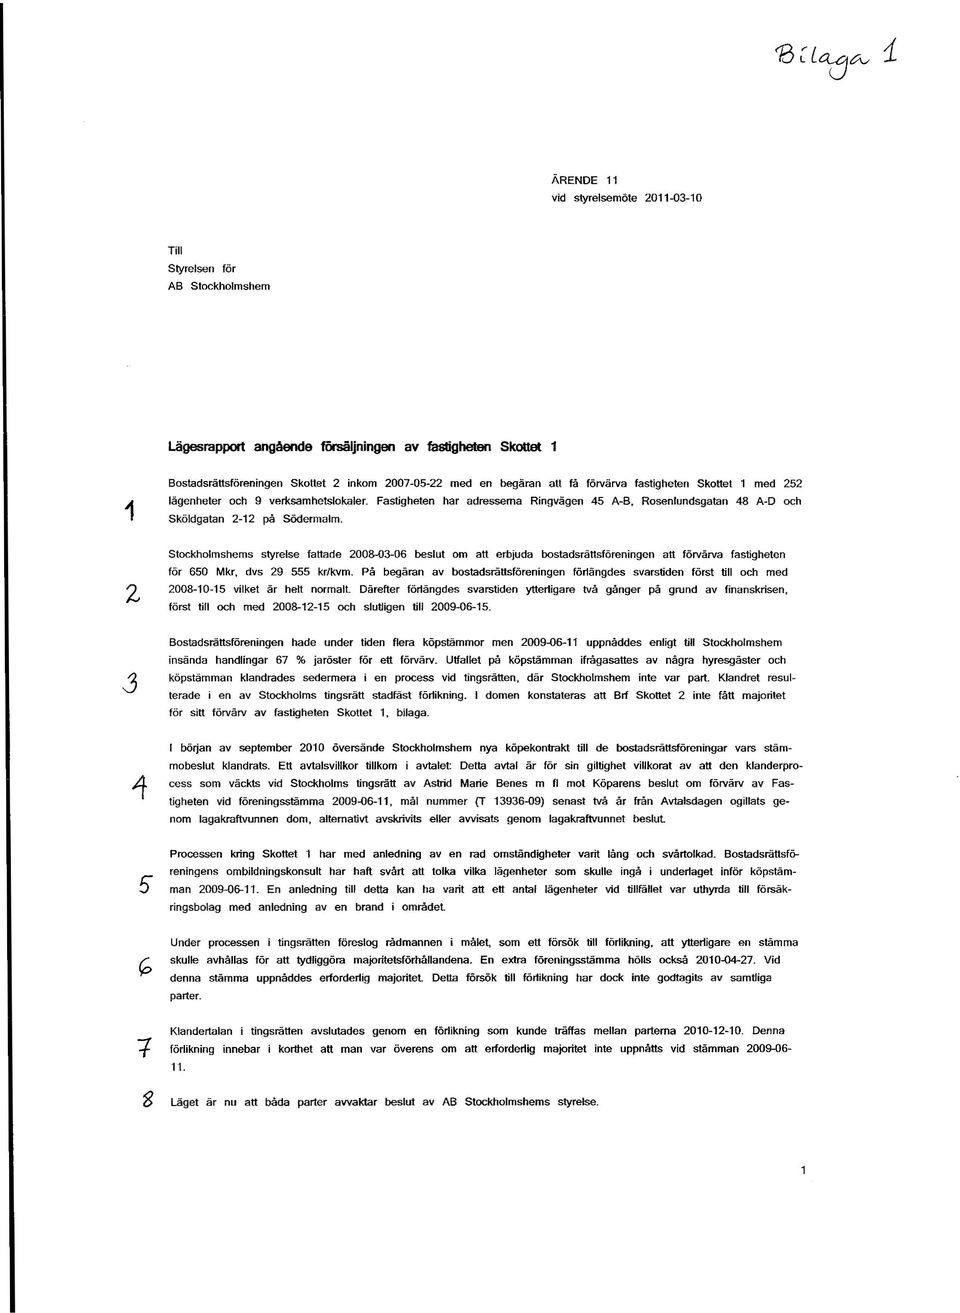 Stockholmshems styrelse fattade 2008-03-06 beslut om att erbjuda bostadsrättsföreningen att förvärva fastigheten för 650 Mkr, dvs 29 555 kr/kvm.